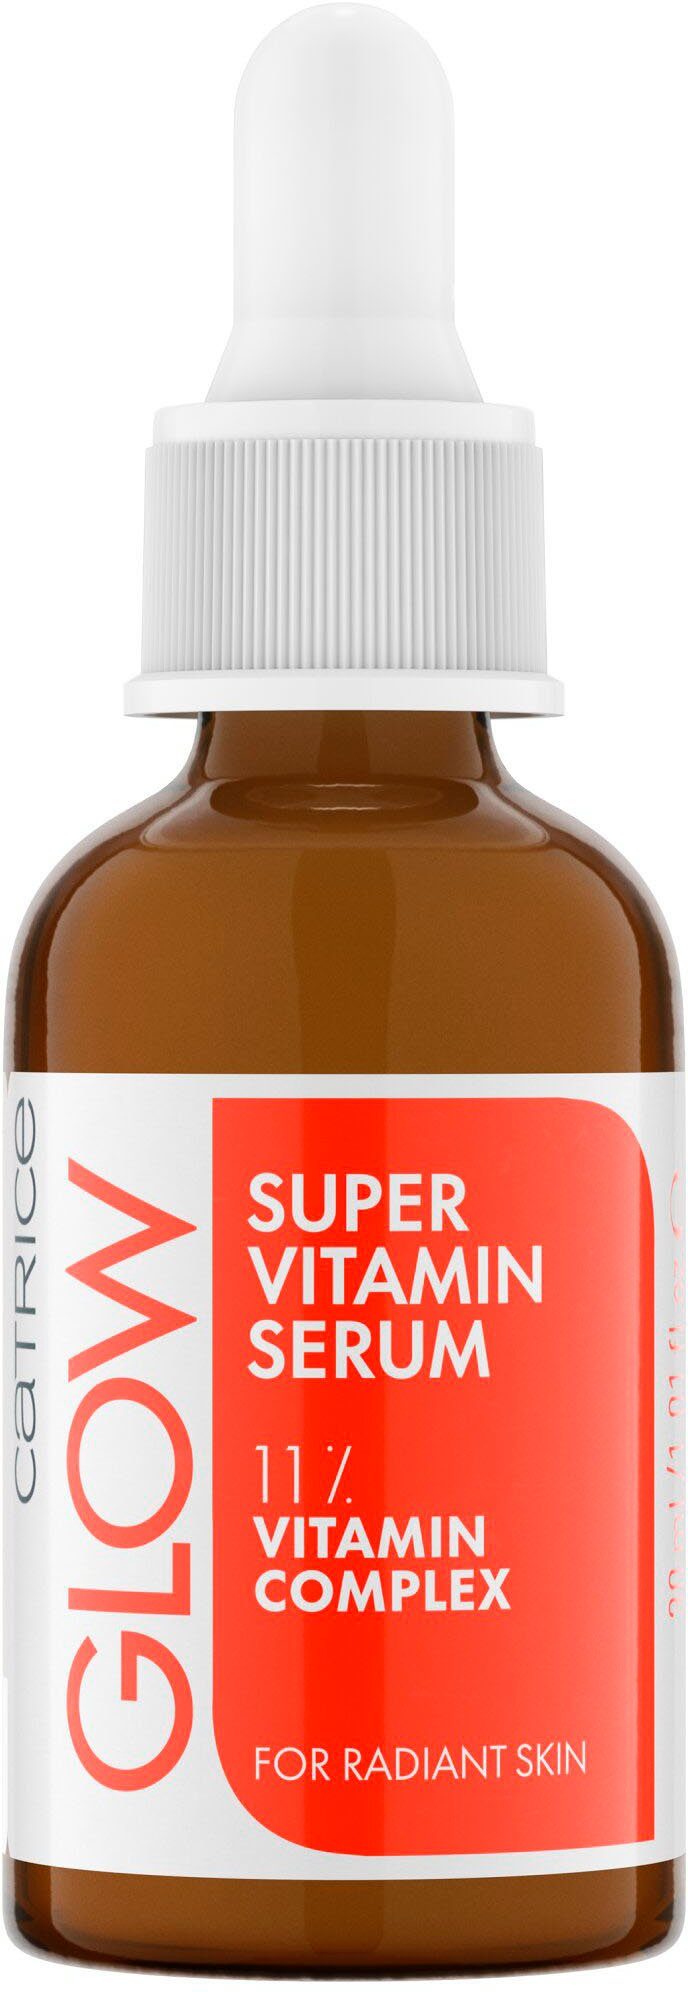 Vitamin Super Catrice Glow Gesichtsserum Serum